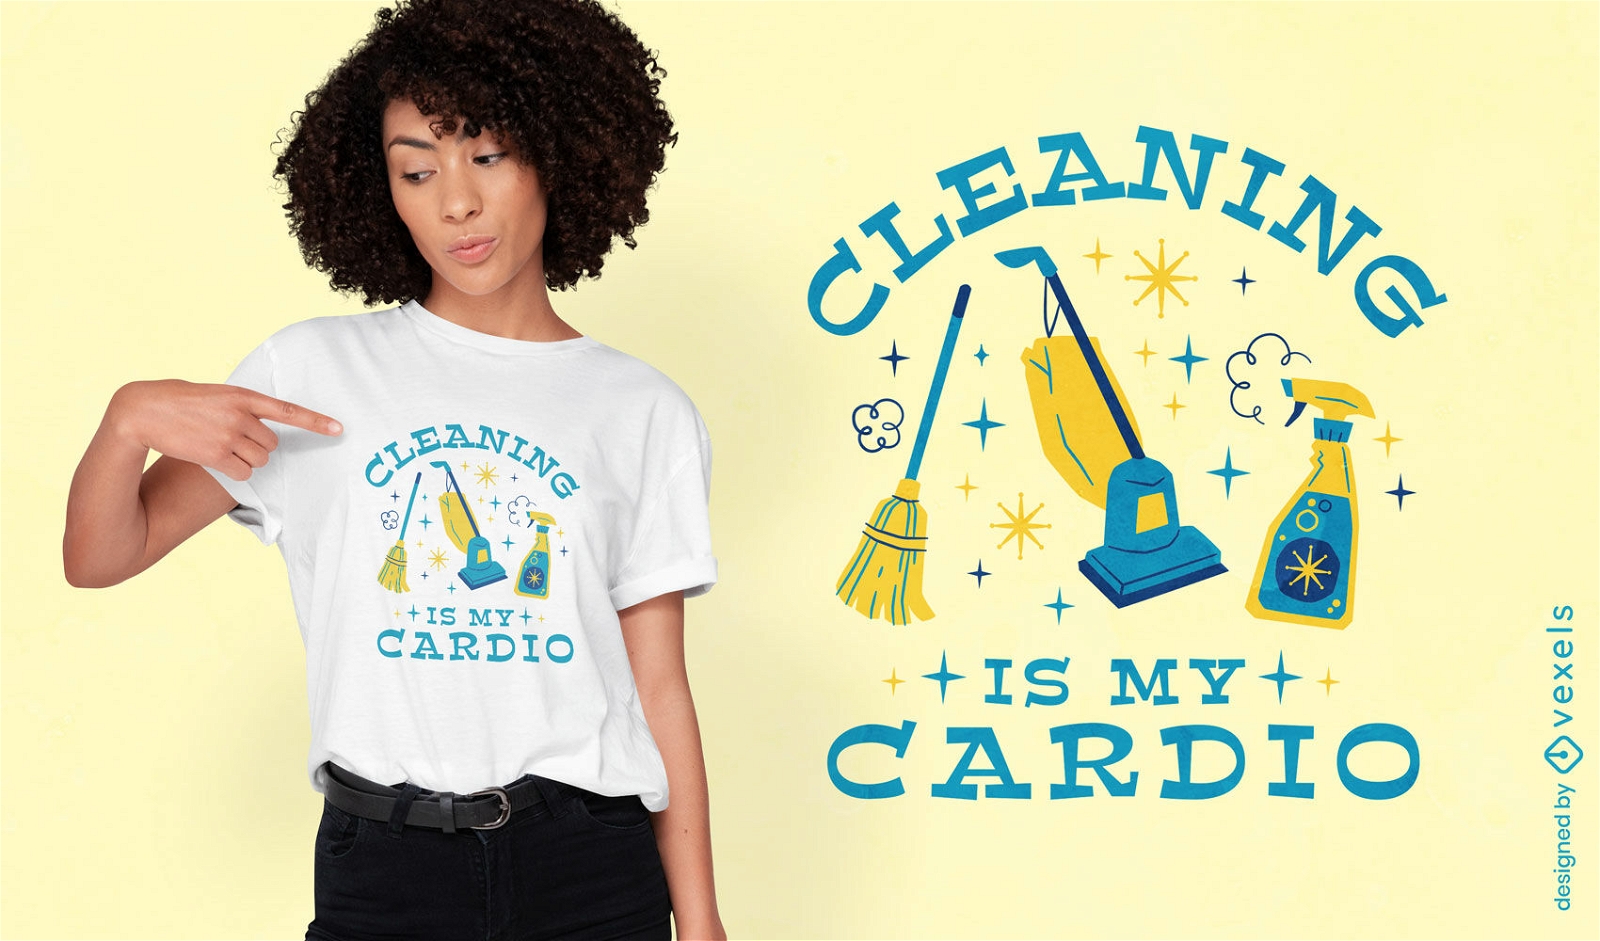 Dise?o de camiseta con tema de limpieza saludable.